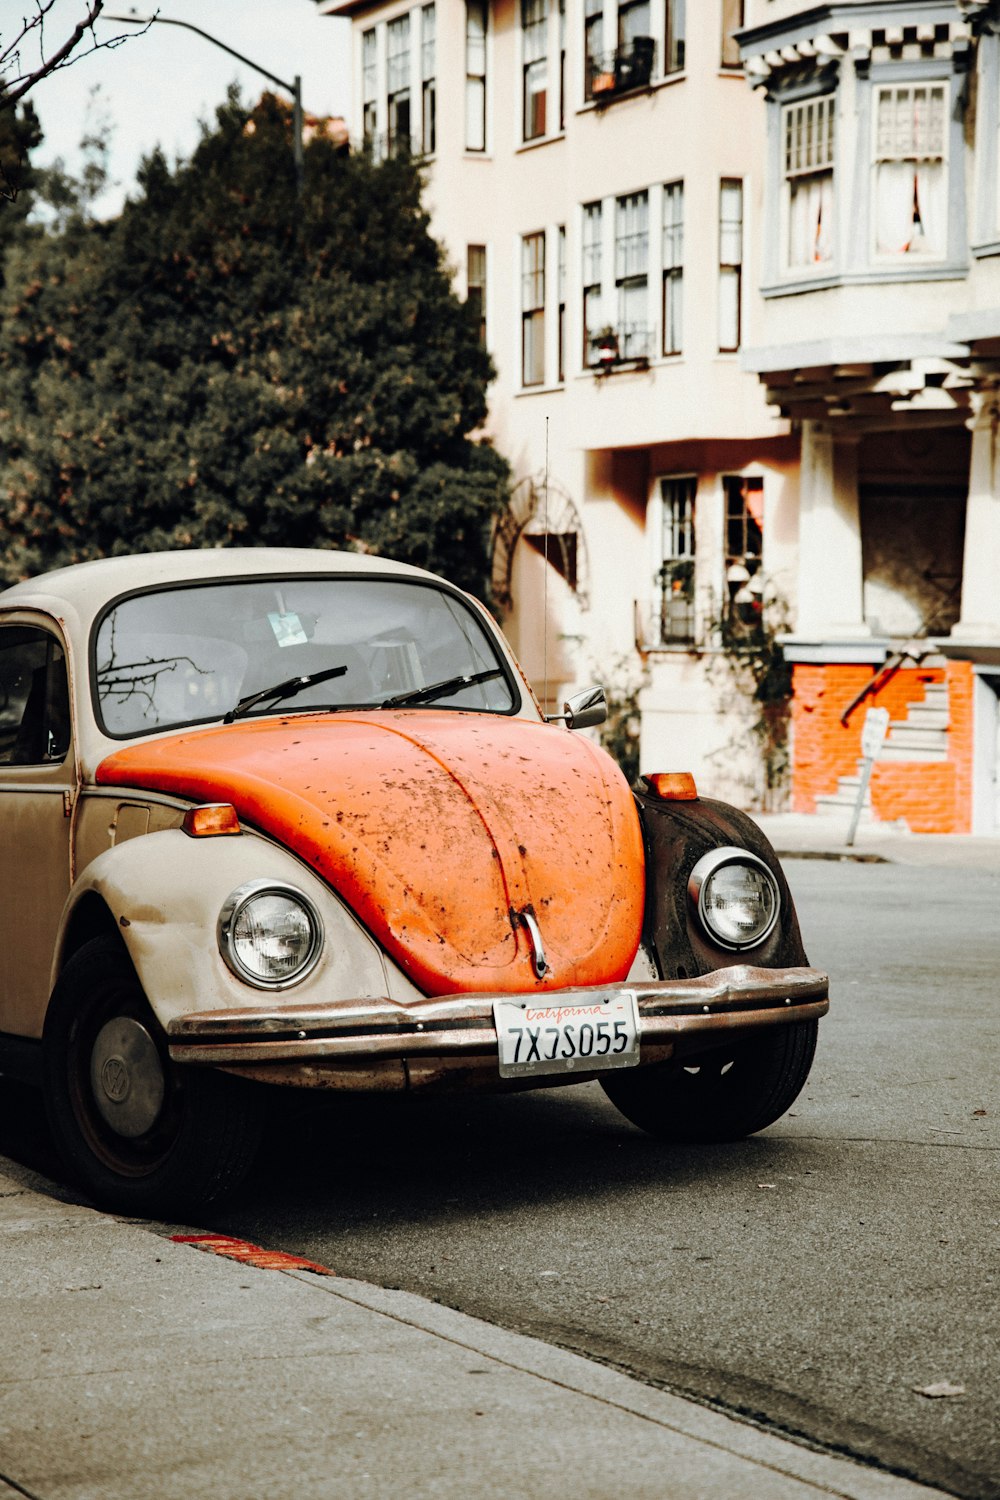 gray and orange Volkswagen Beetle